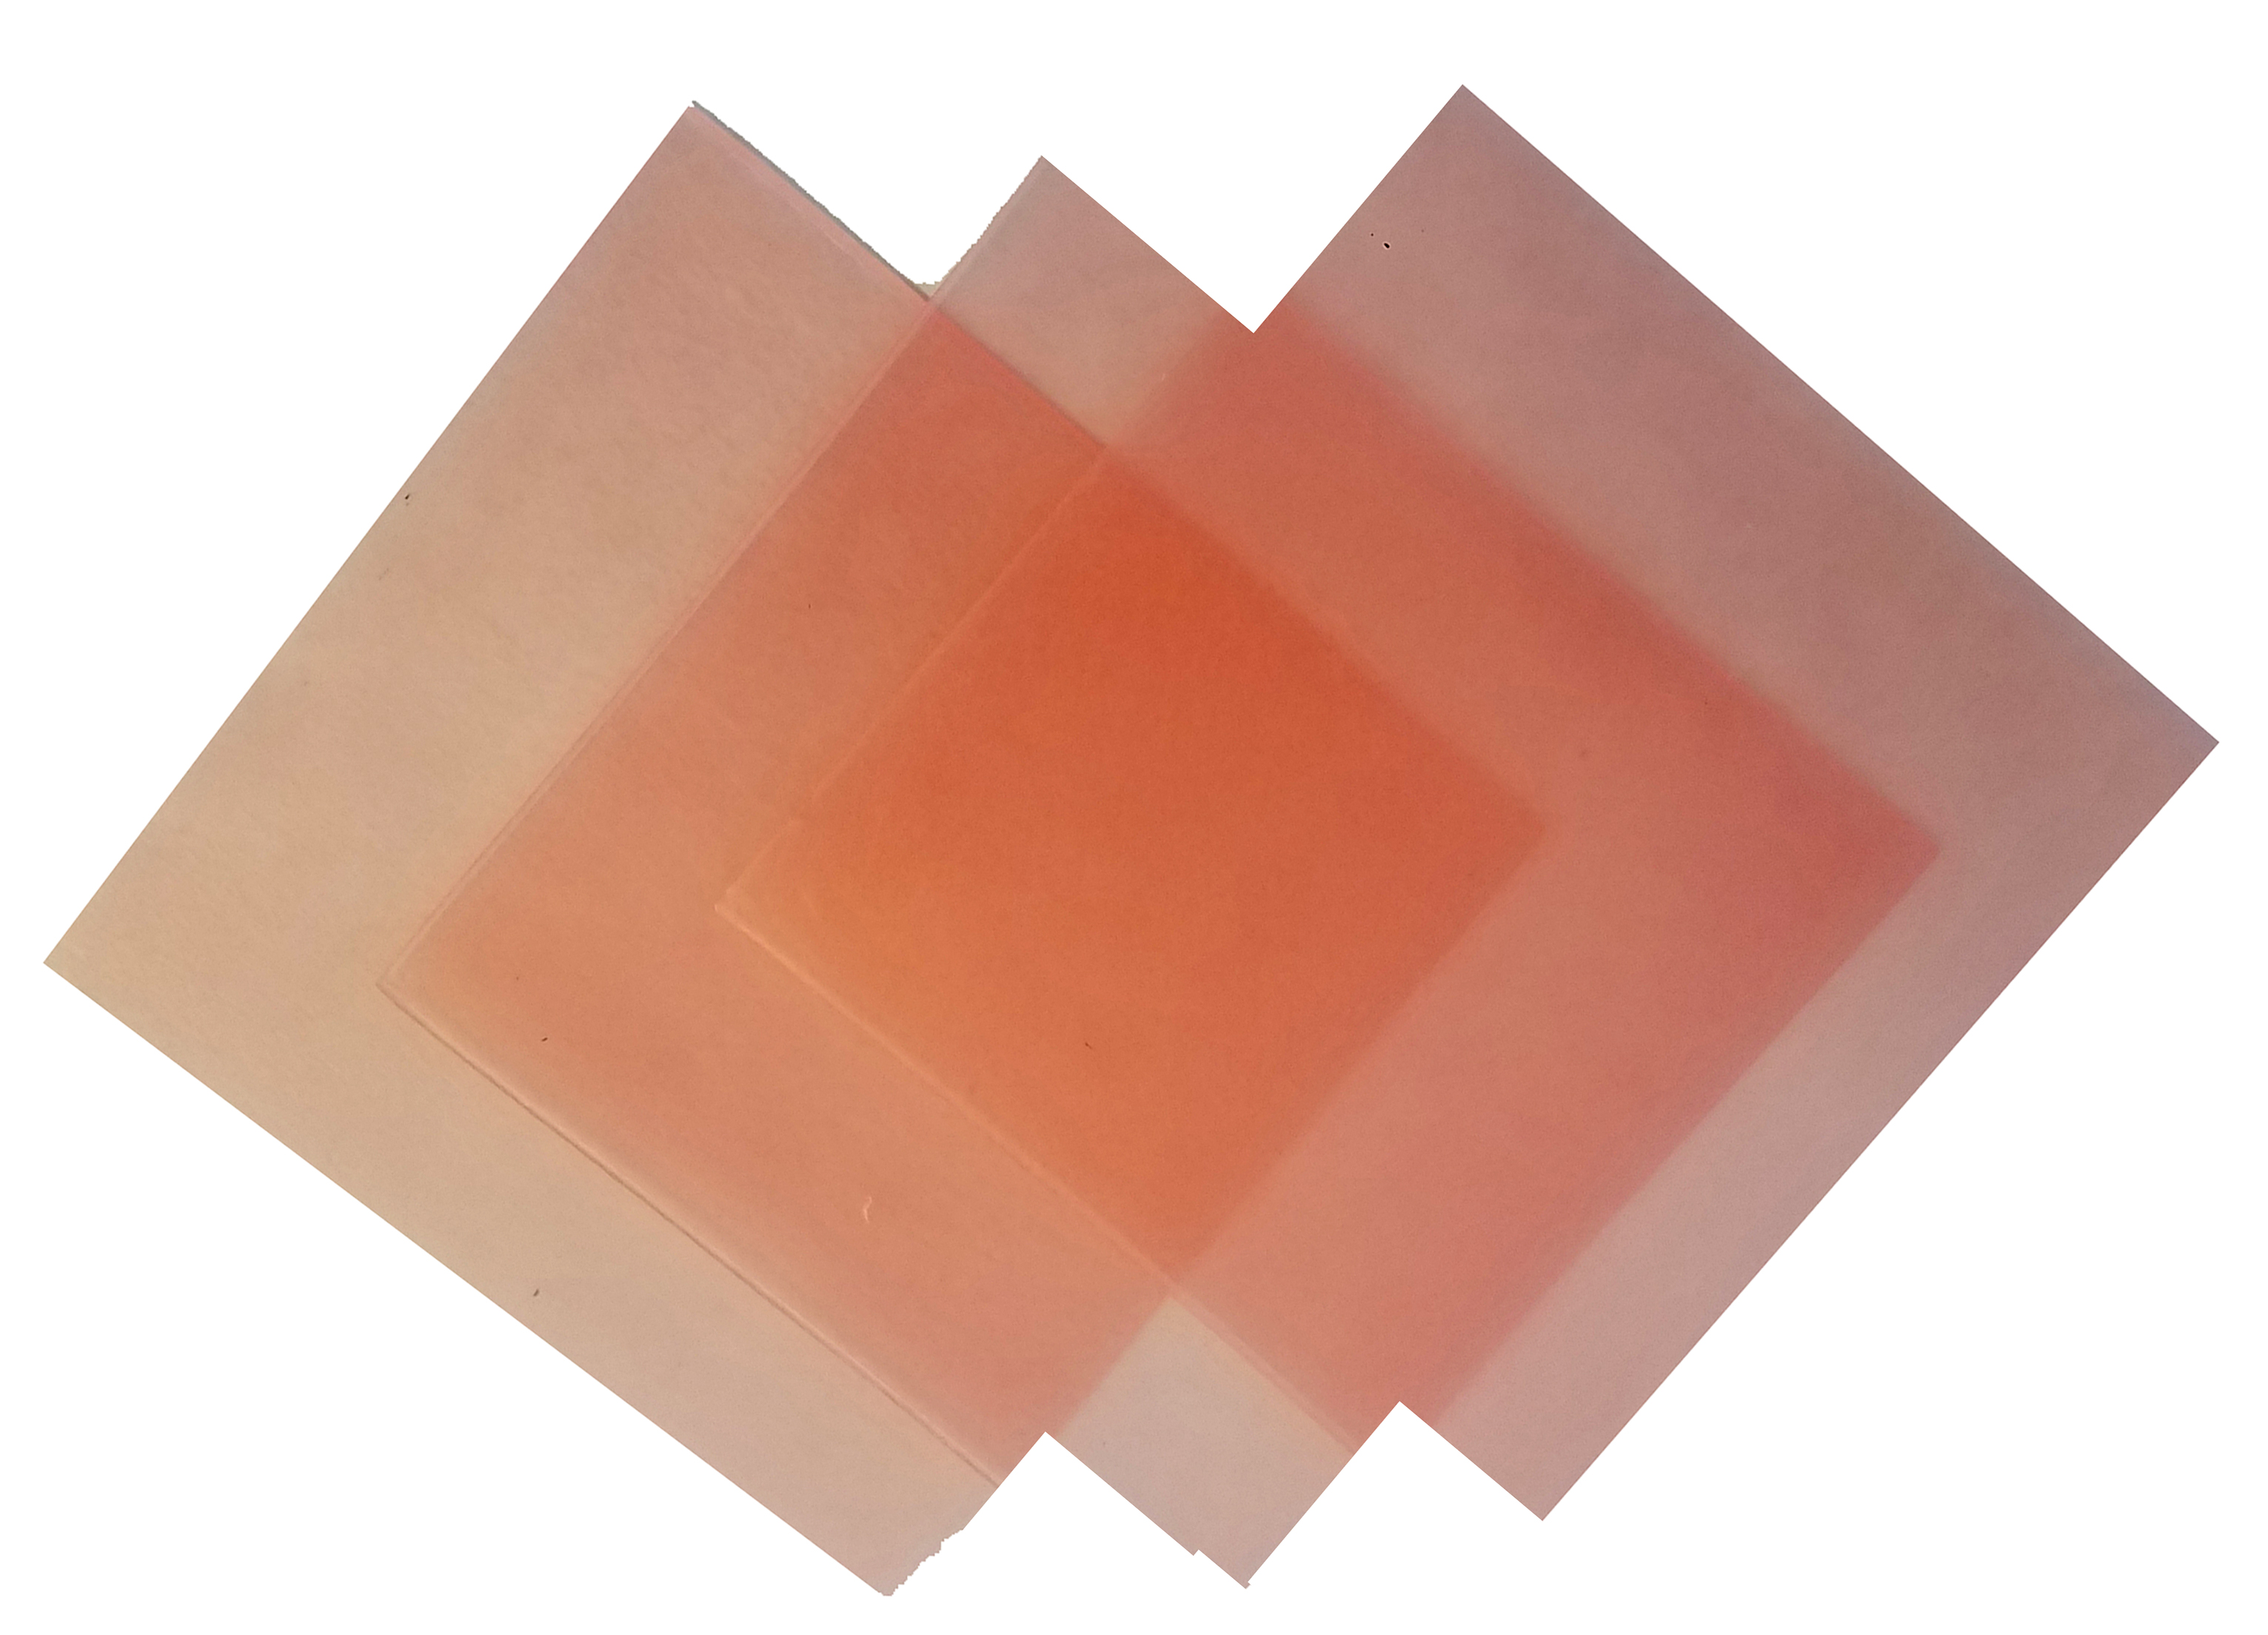 4\"x4\" sheet wax 26 gauge pink